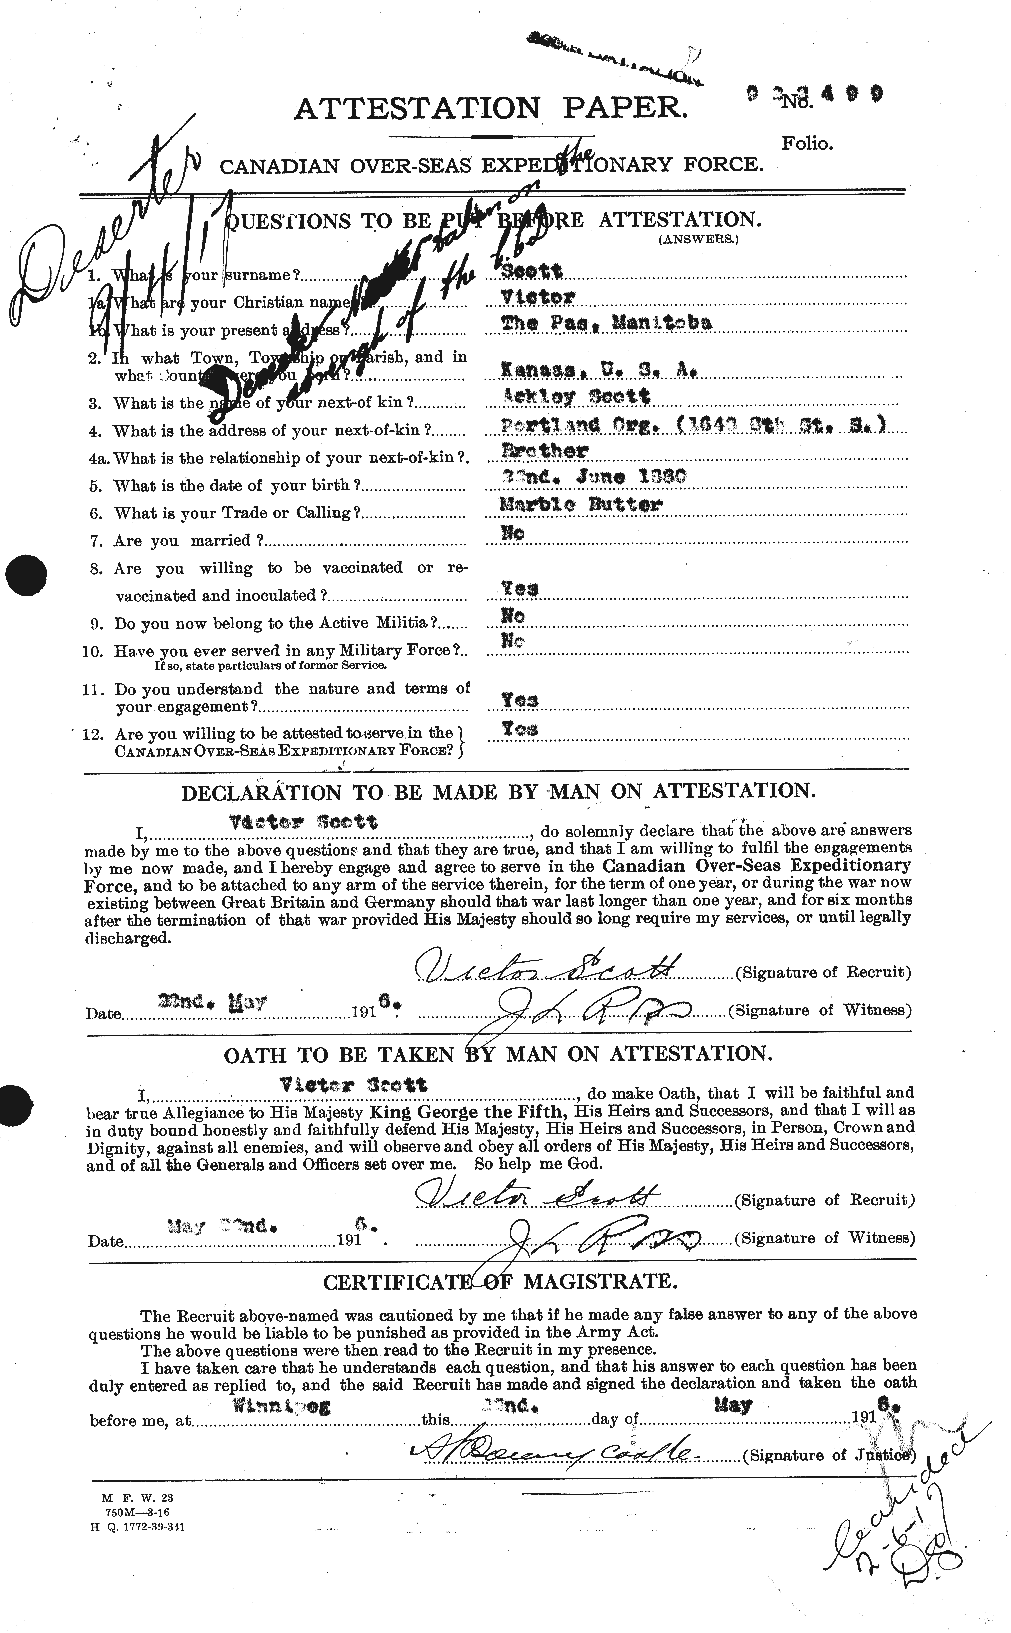 Dossiers du Personnel de la Première Guerre mondiale - CEC 088205a